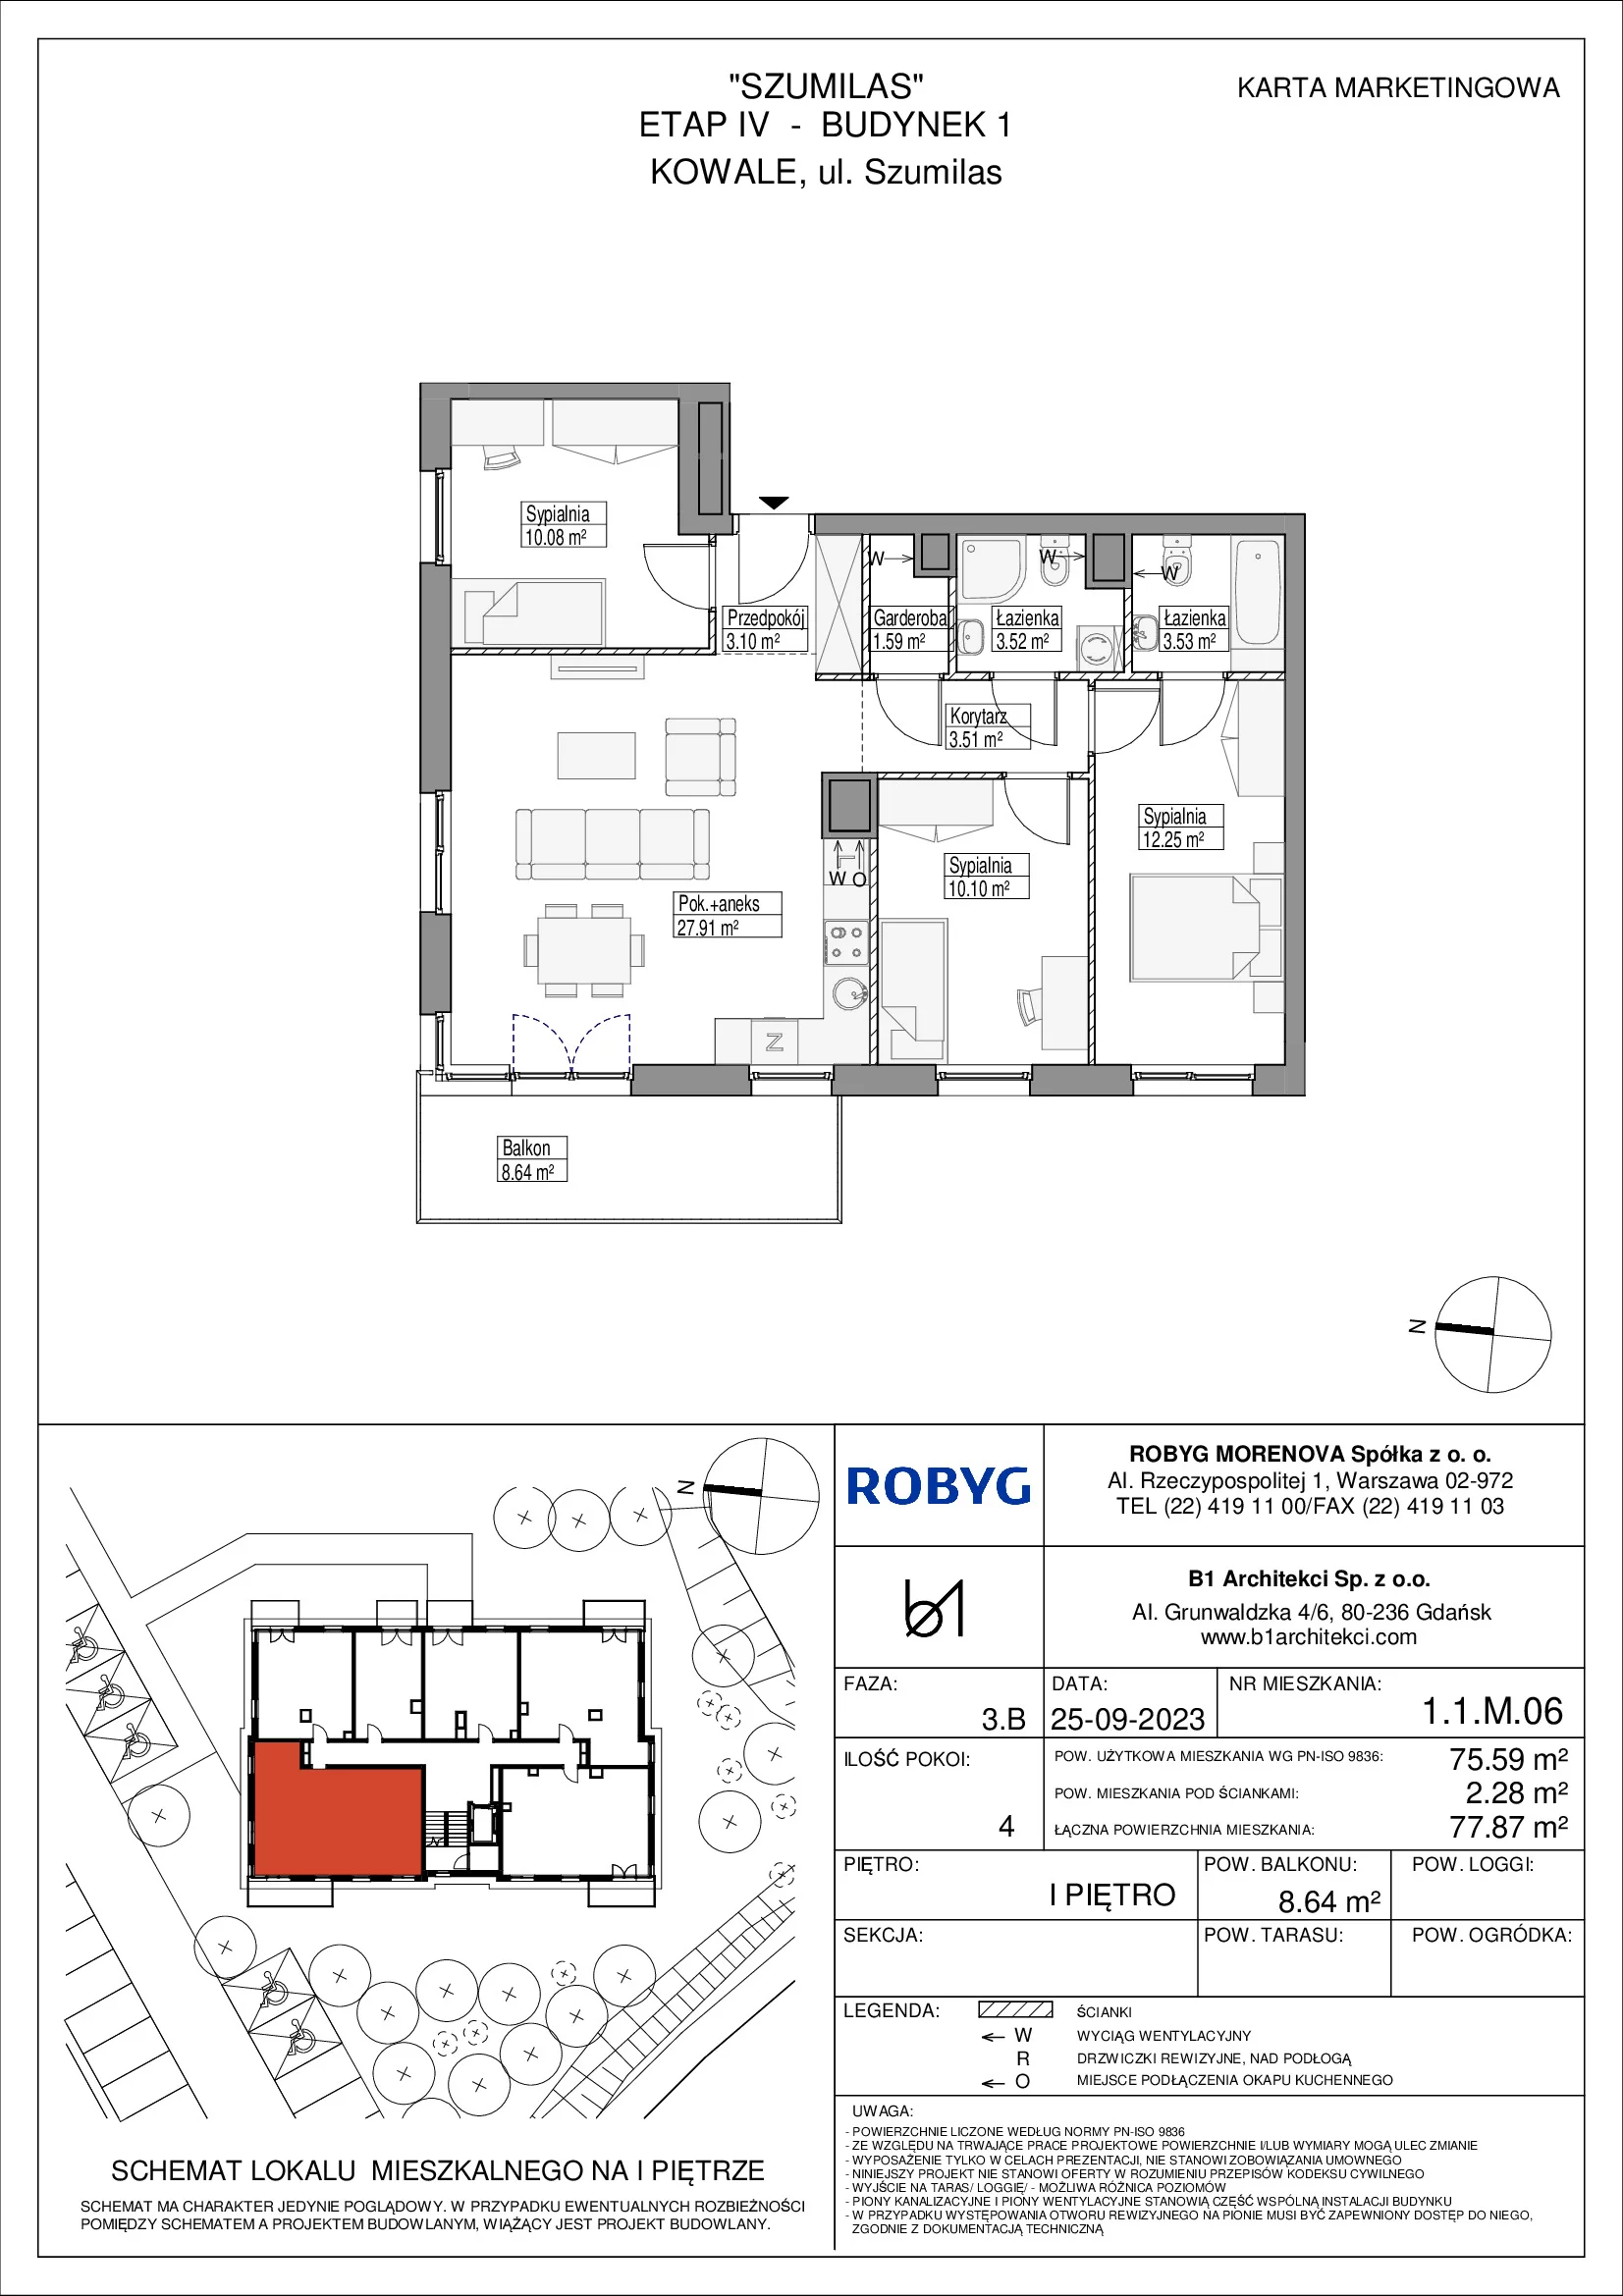 Mieszkanie 75,59 m², piętro 1, oferta nr 1.1M06, Szumilas, Kowale, ul. Magazynowa